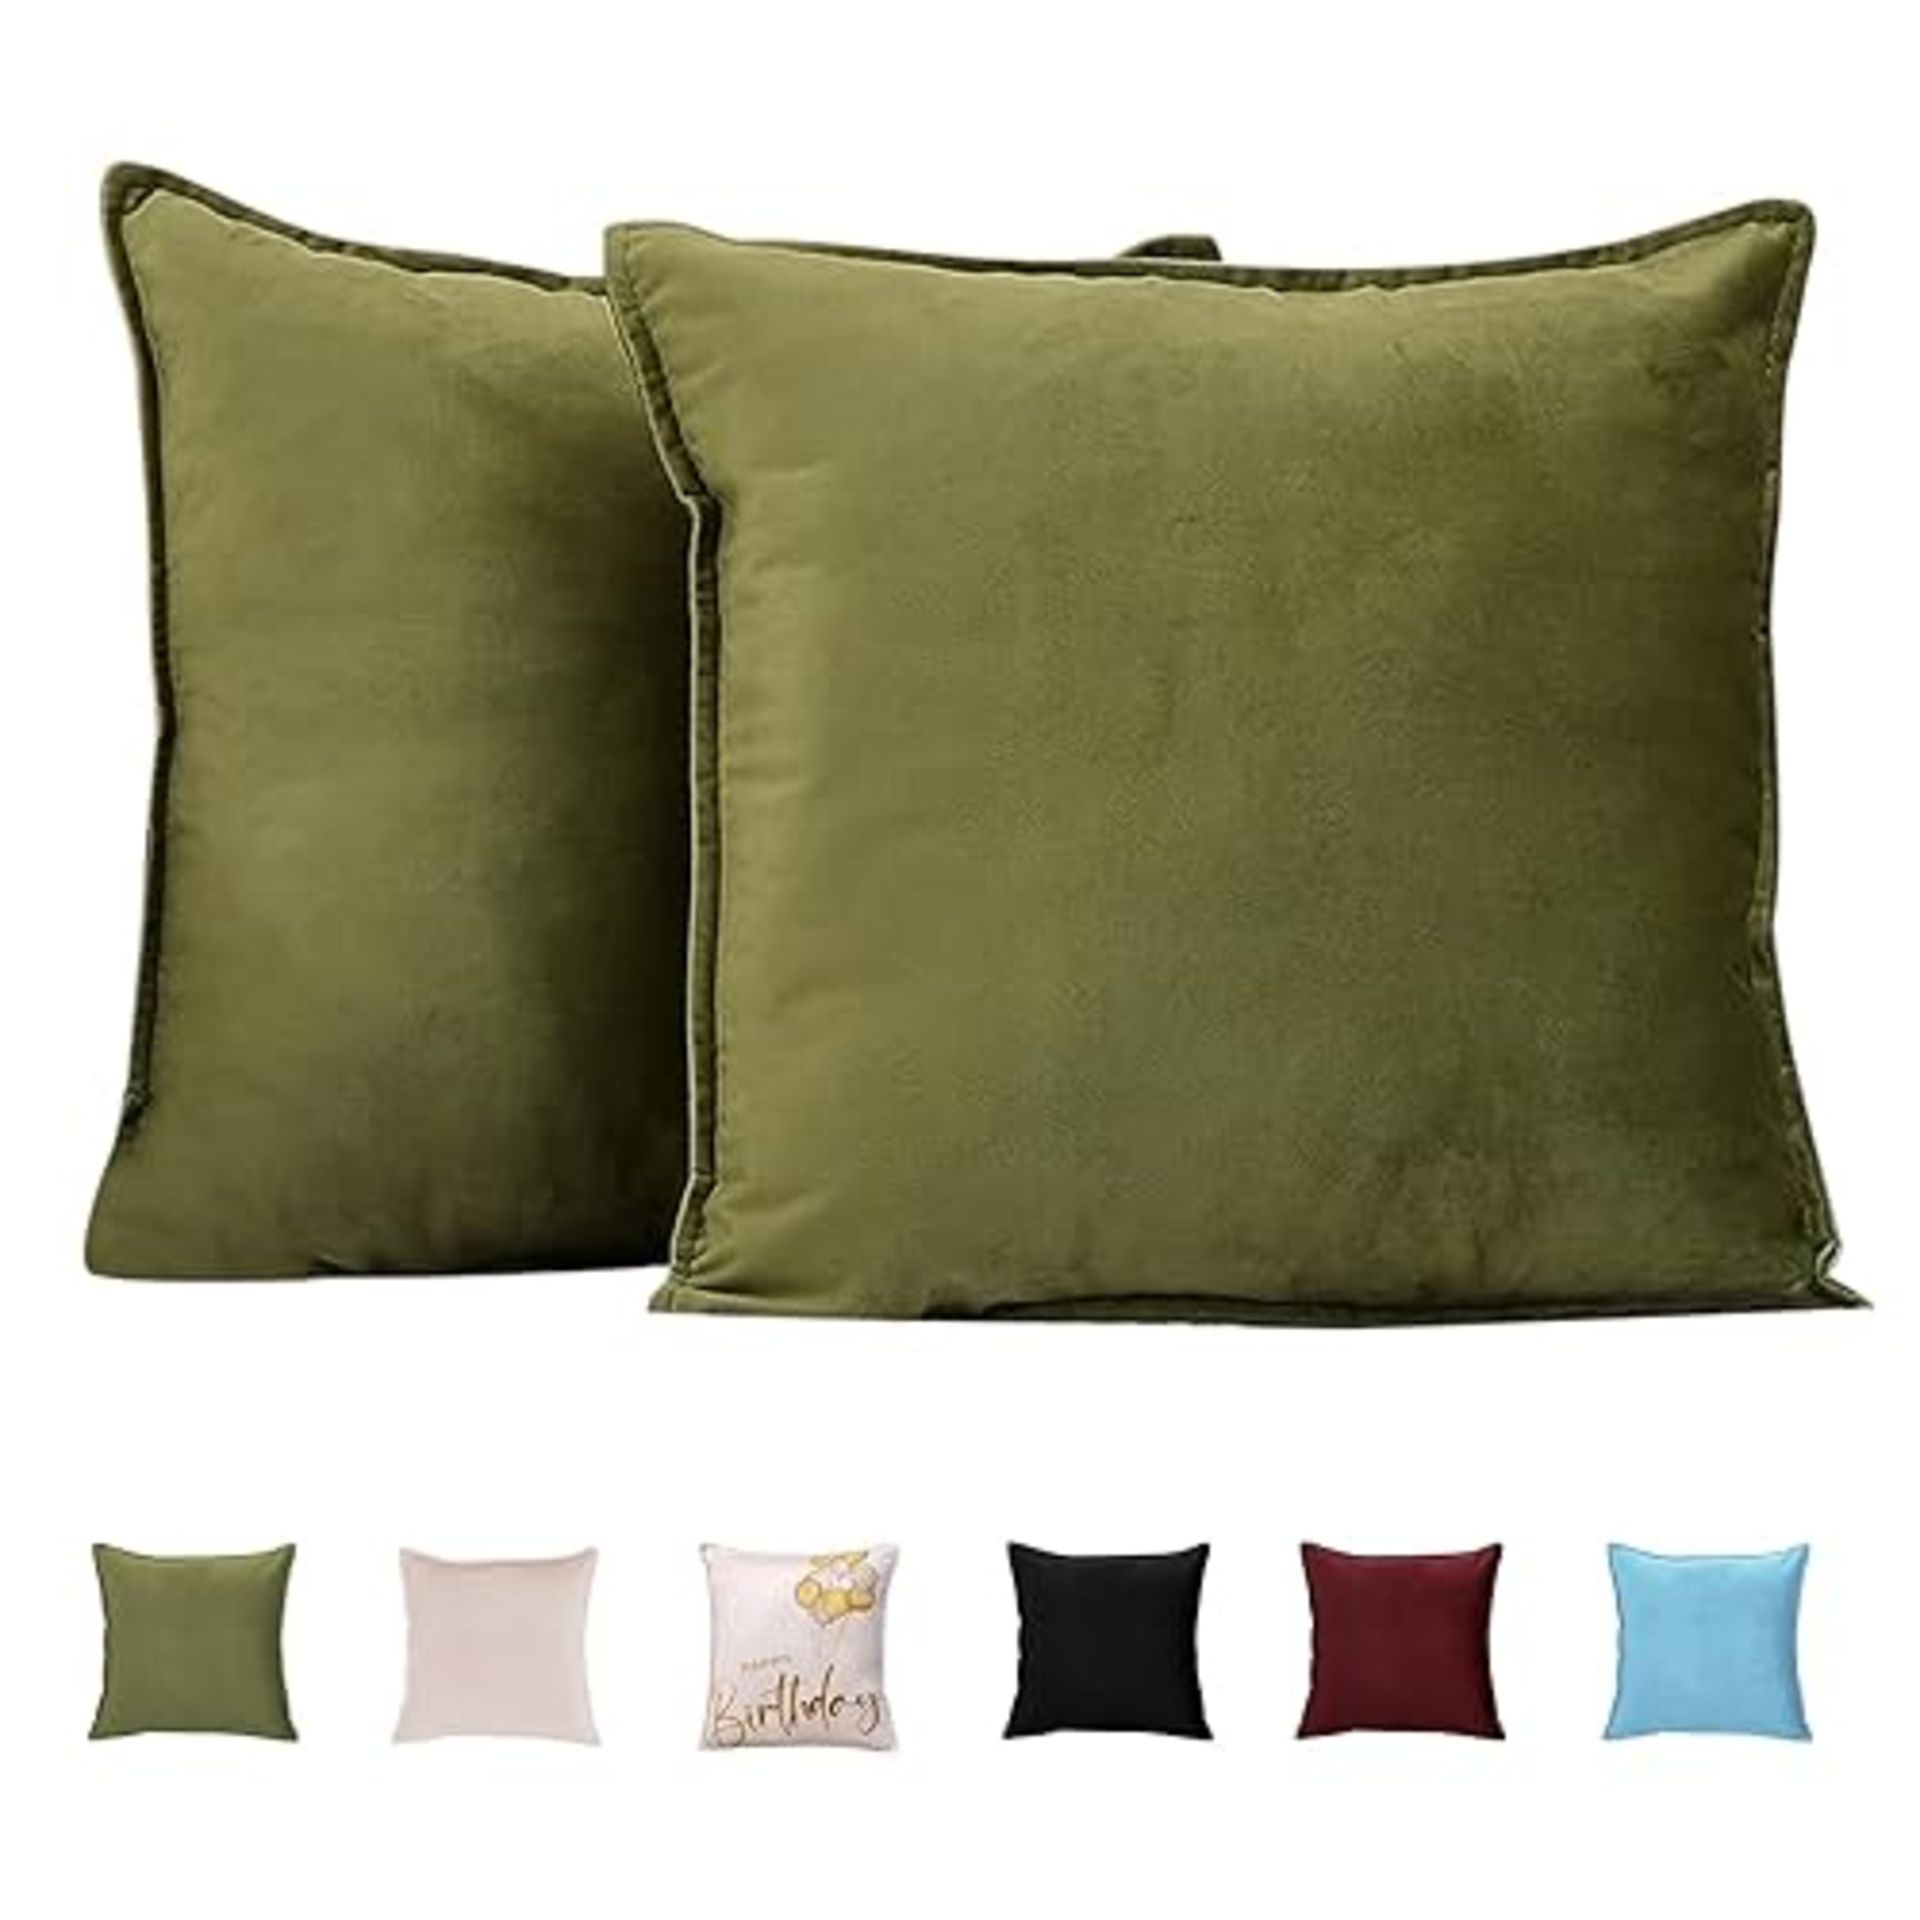 RACE LEAF Velvet Soft Cushion Covers set of 2 Square Decorative Pillow Case 40cm x 40cm Luxurious T